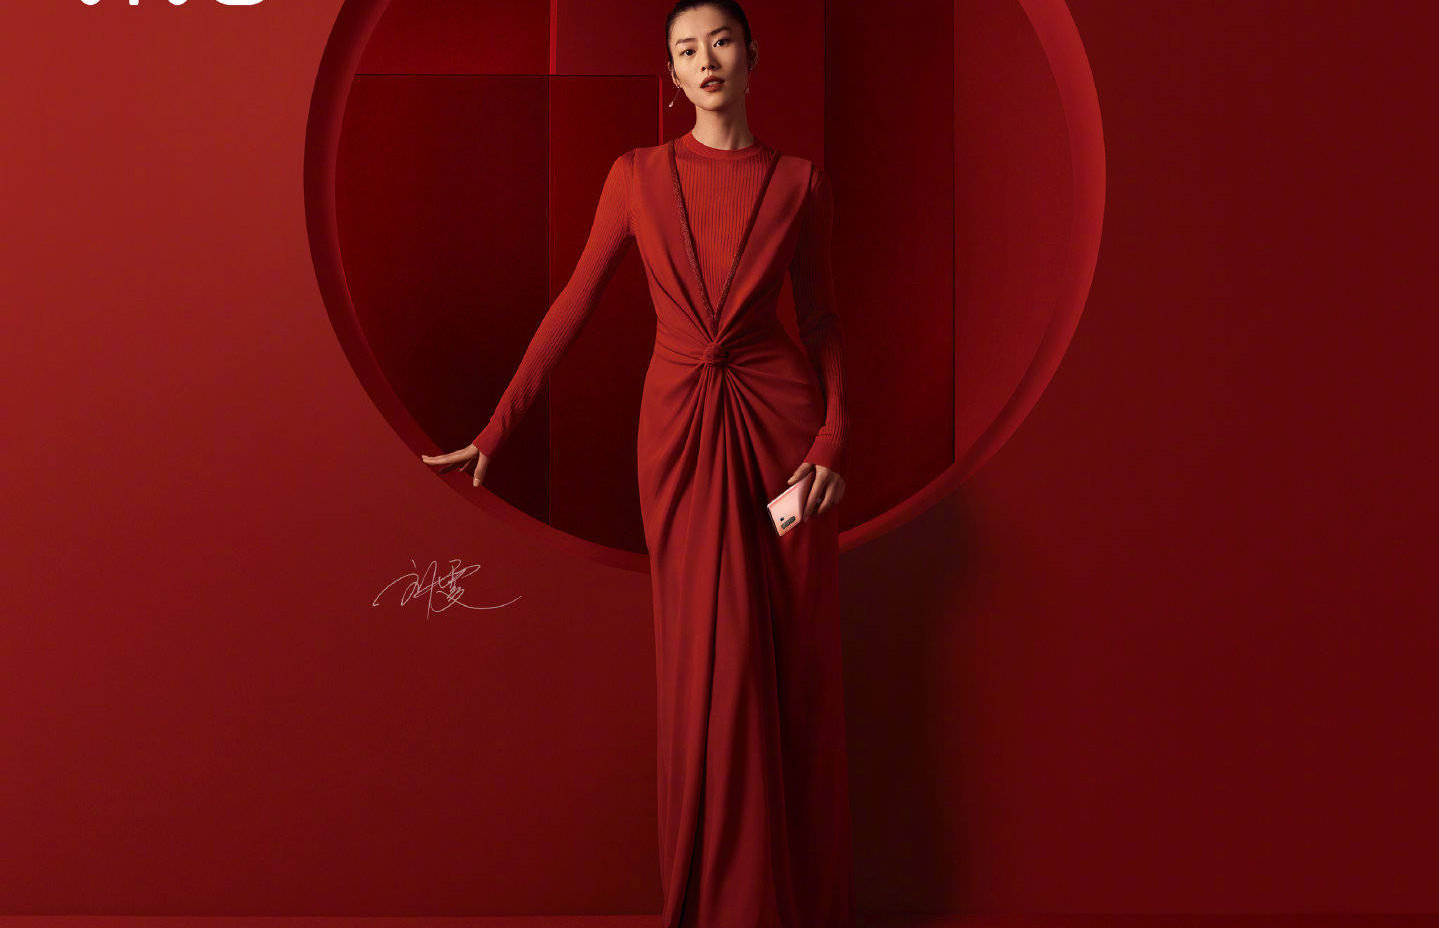 Liu Wen trông vô cùng hợp với những item màu đỏ, điển hình bộ váy đỏ dài tay này đã mang đến hình ảnh của một cô nàng thanh lịch, trưởng thành